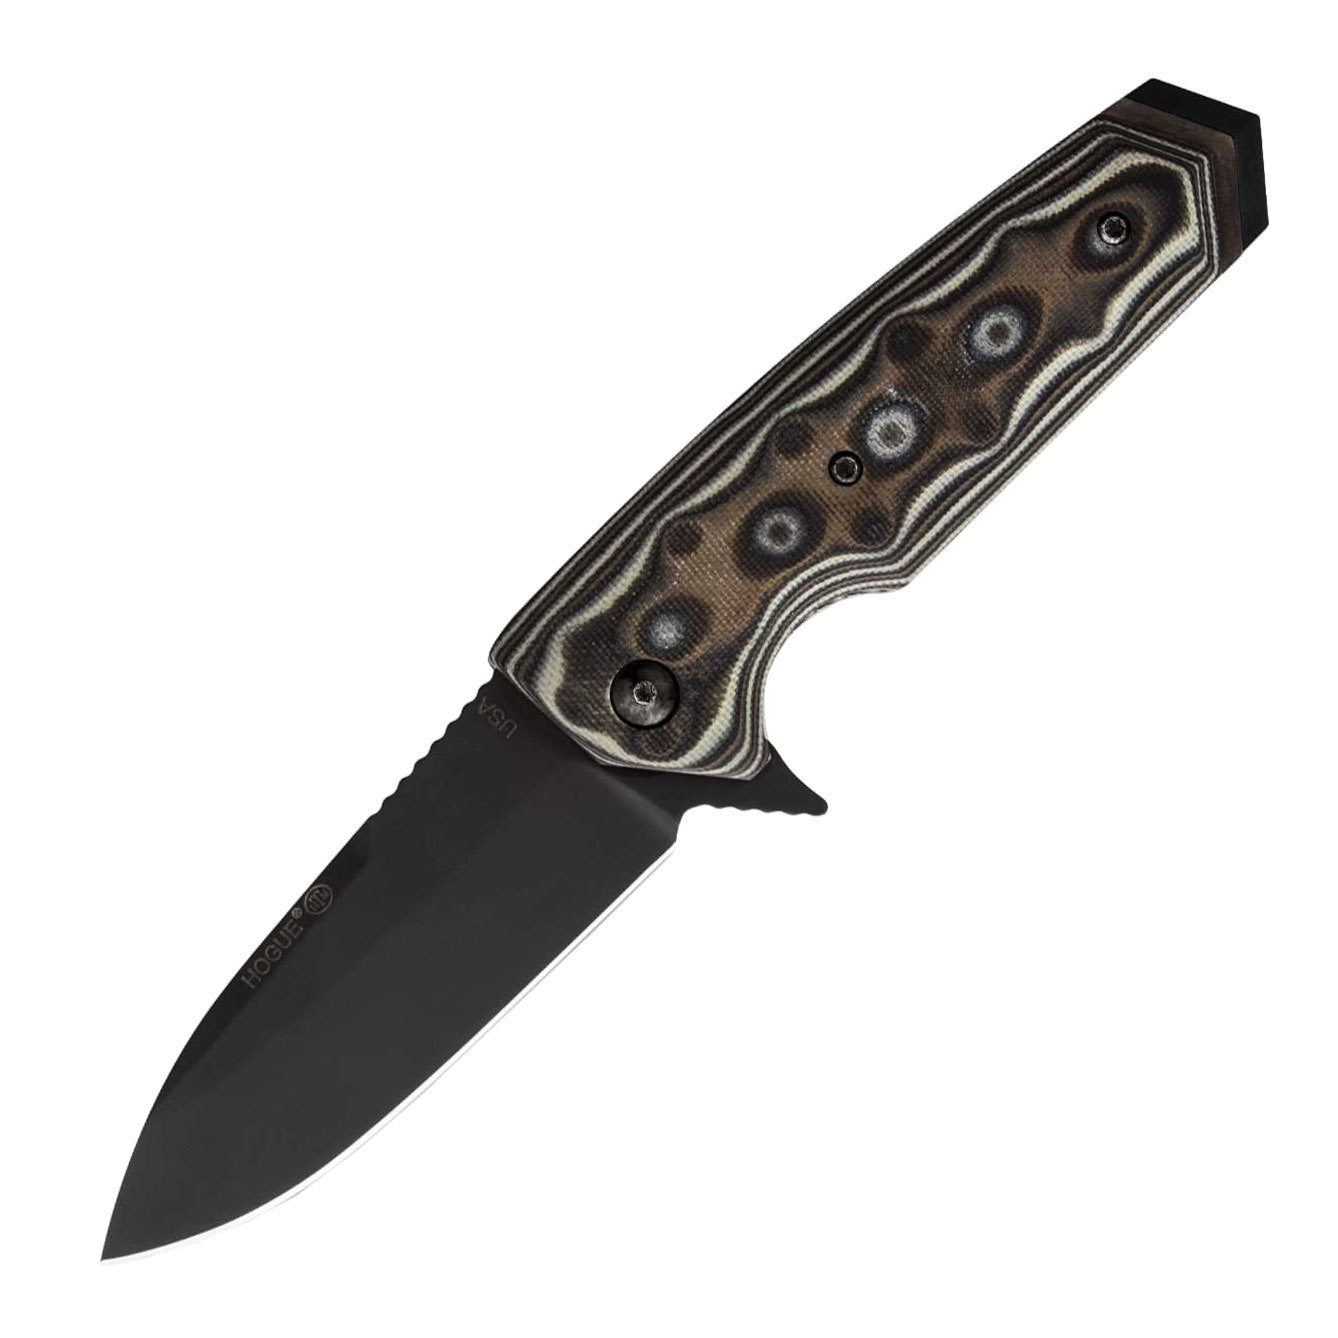 Нож складной Hogue Elishewitz EX-02 Spear Point, сталь 154CM, рукоять стеклотекстолит G-Mascus®, темно-серый нож складной hogue ex 02 spear point skulls